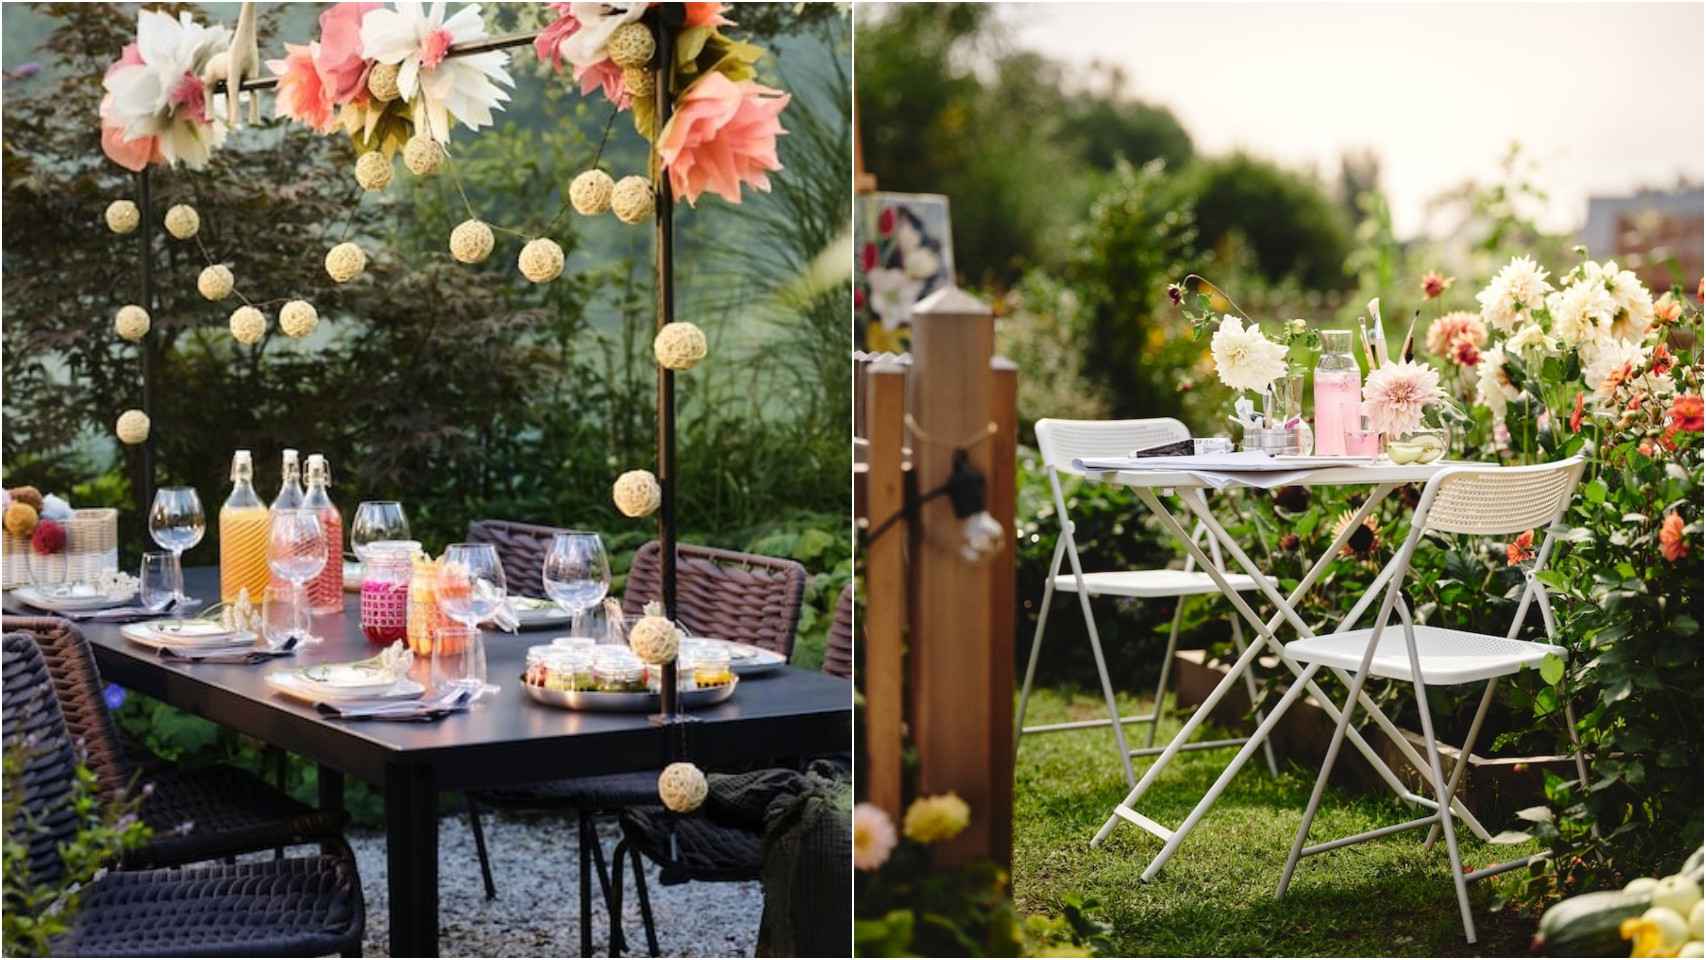 Imagen de un jardín decorado con mesas de Ikea.